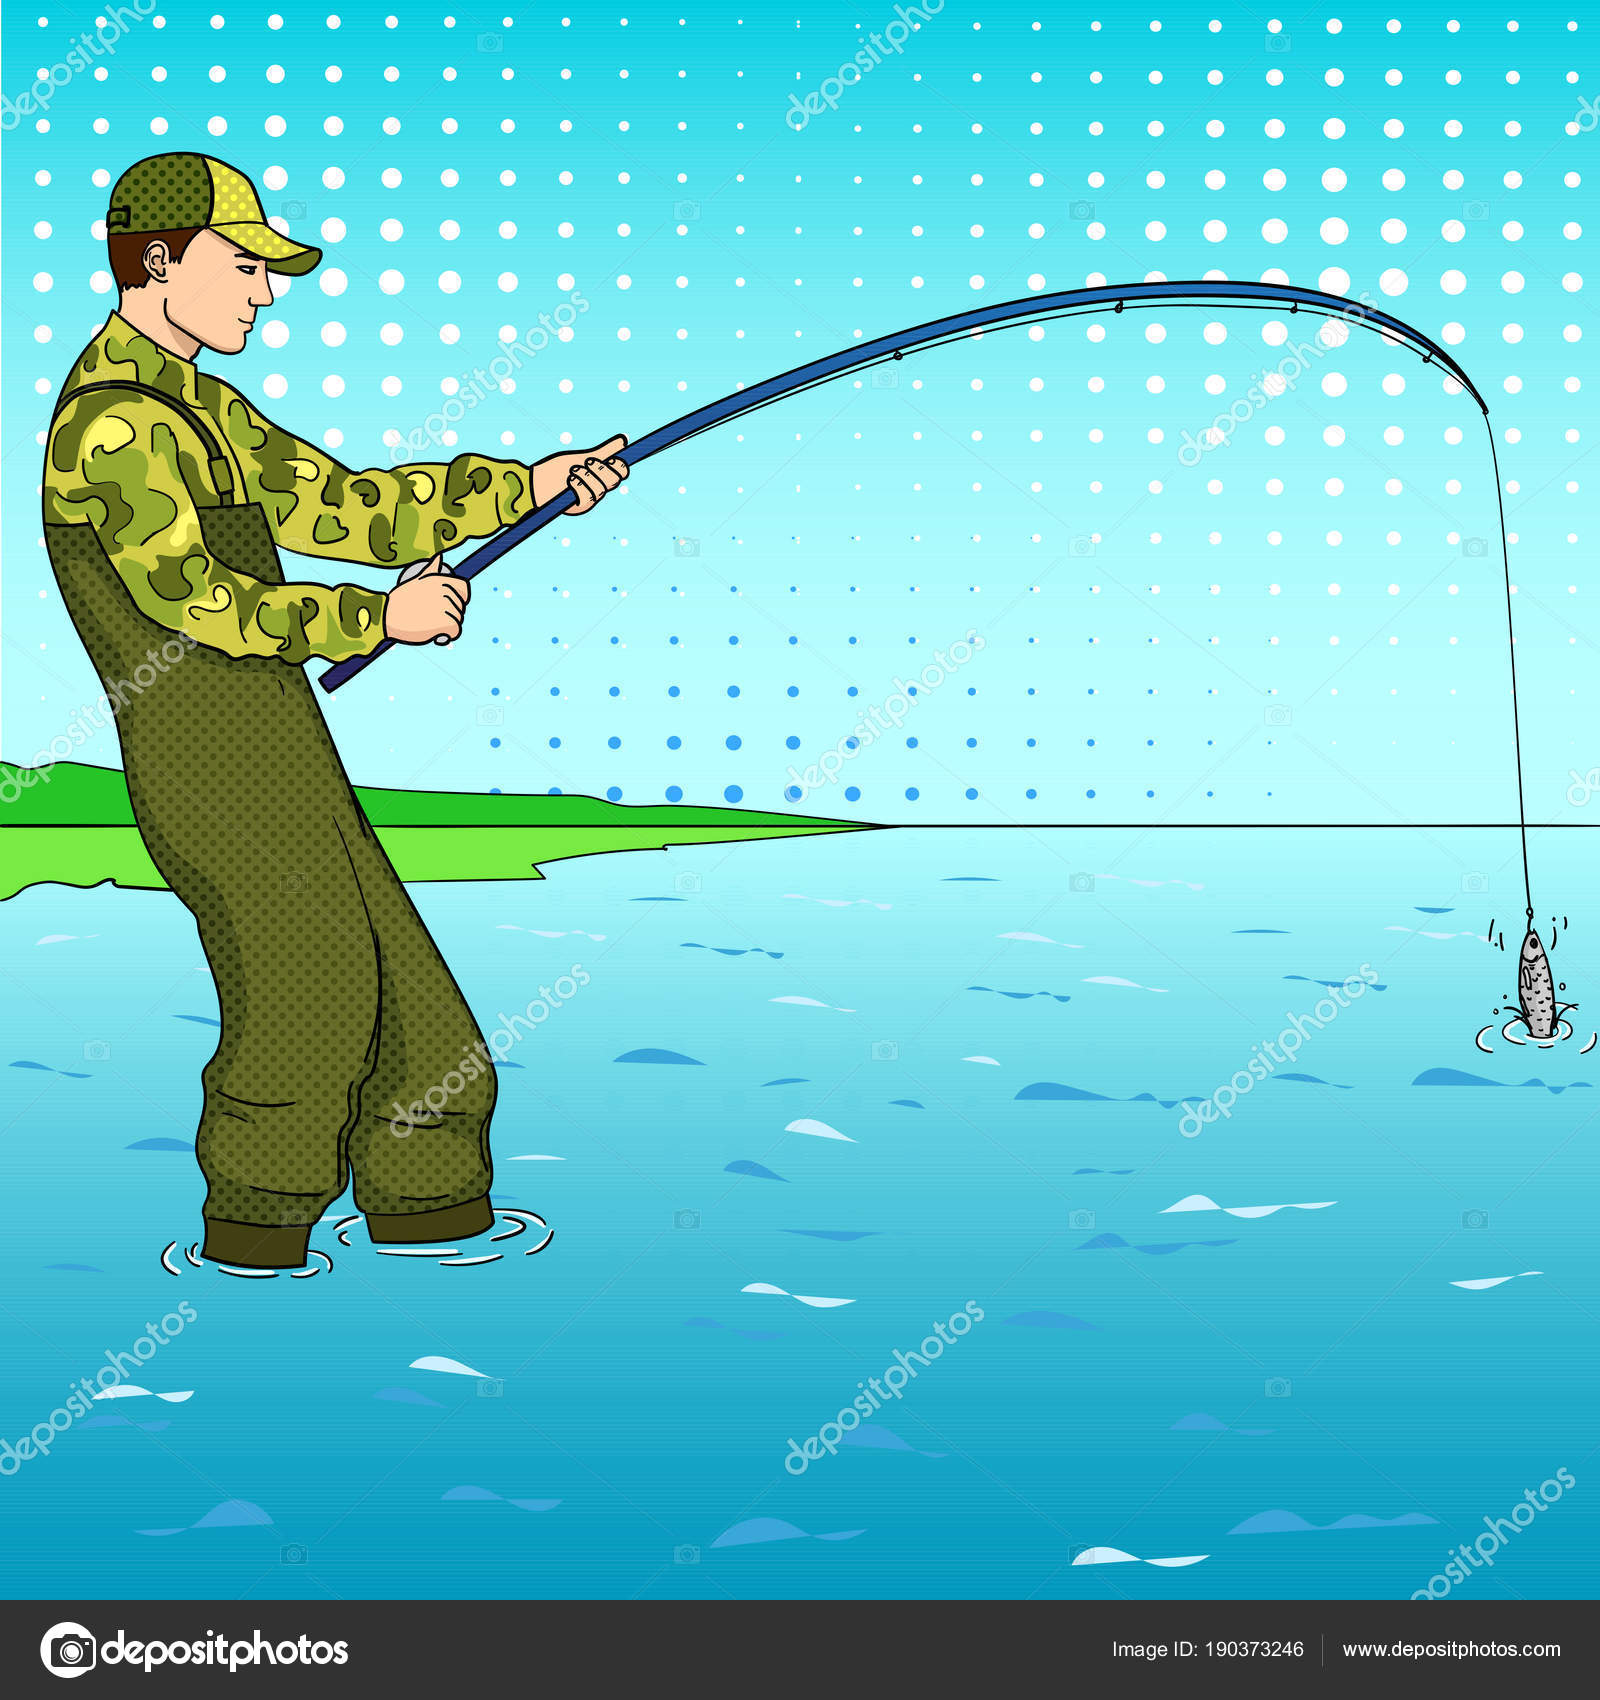 https://st3.depositphotos.com/6940196/19037/v/1600/depositphotos_190373246-stock-illustration-pop-art-fisherman-standing-in.jpg